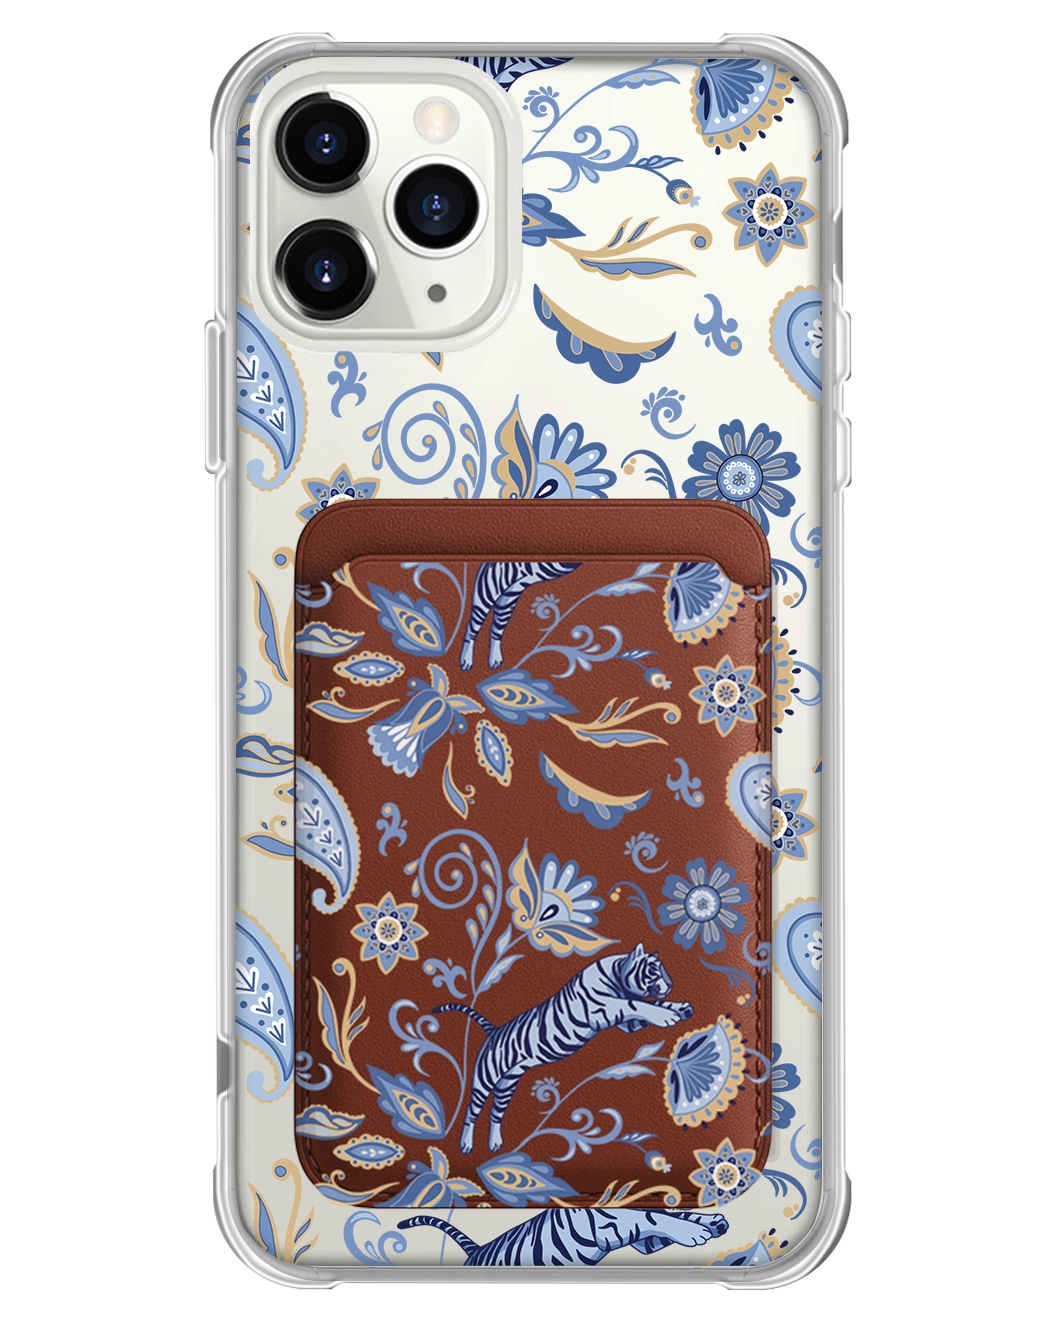 iPhone Magnetic Wallet Case - Tiger & Floral